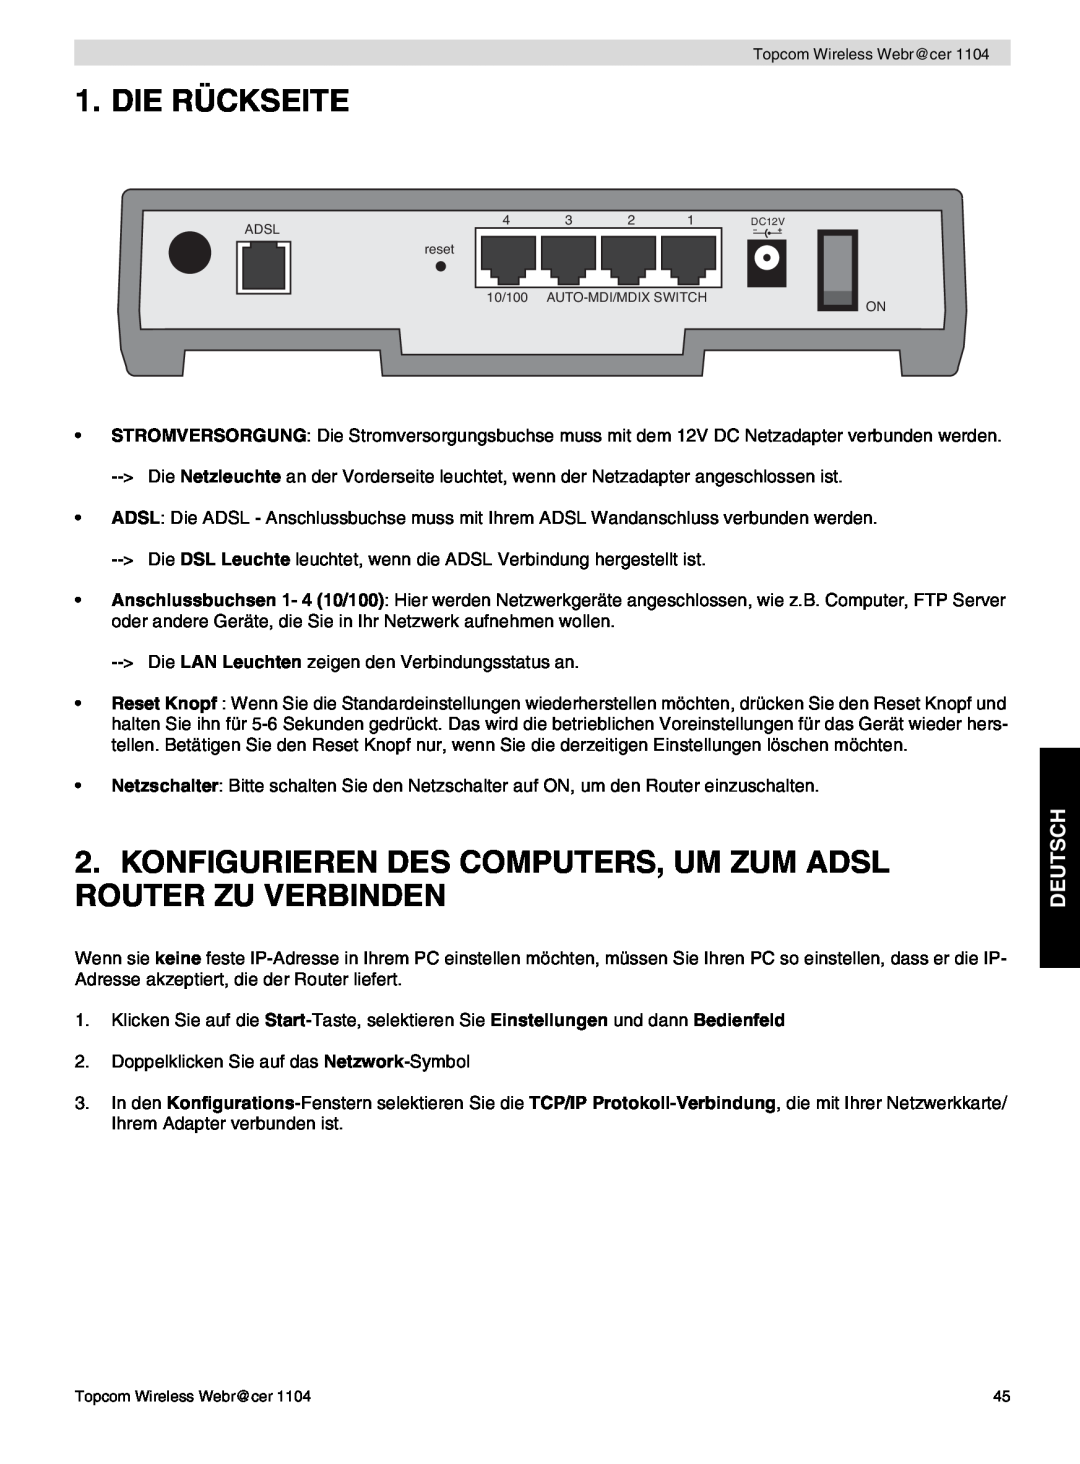 Topcom 1104 manual do utilizador Die Rückseite, Konfigurieren Des Computers, Um Zum Adsl Router Zu Verbinden, Deutsch 